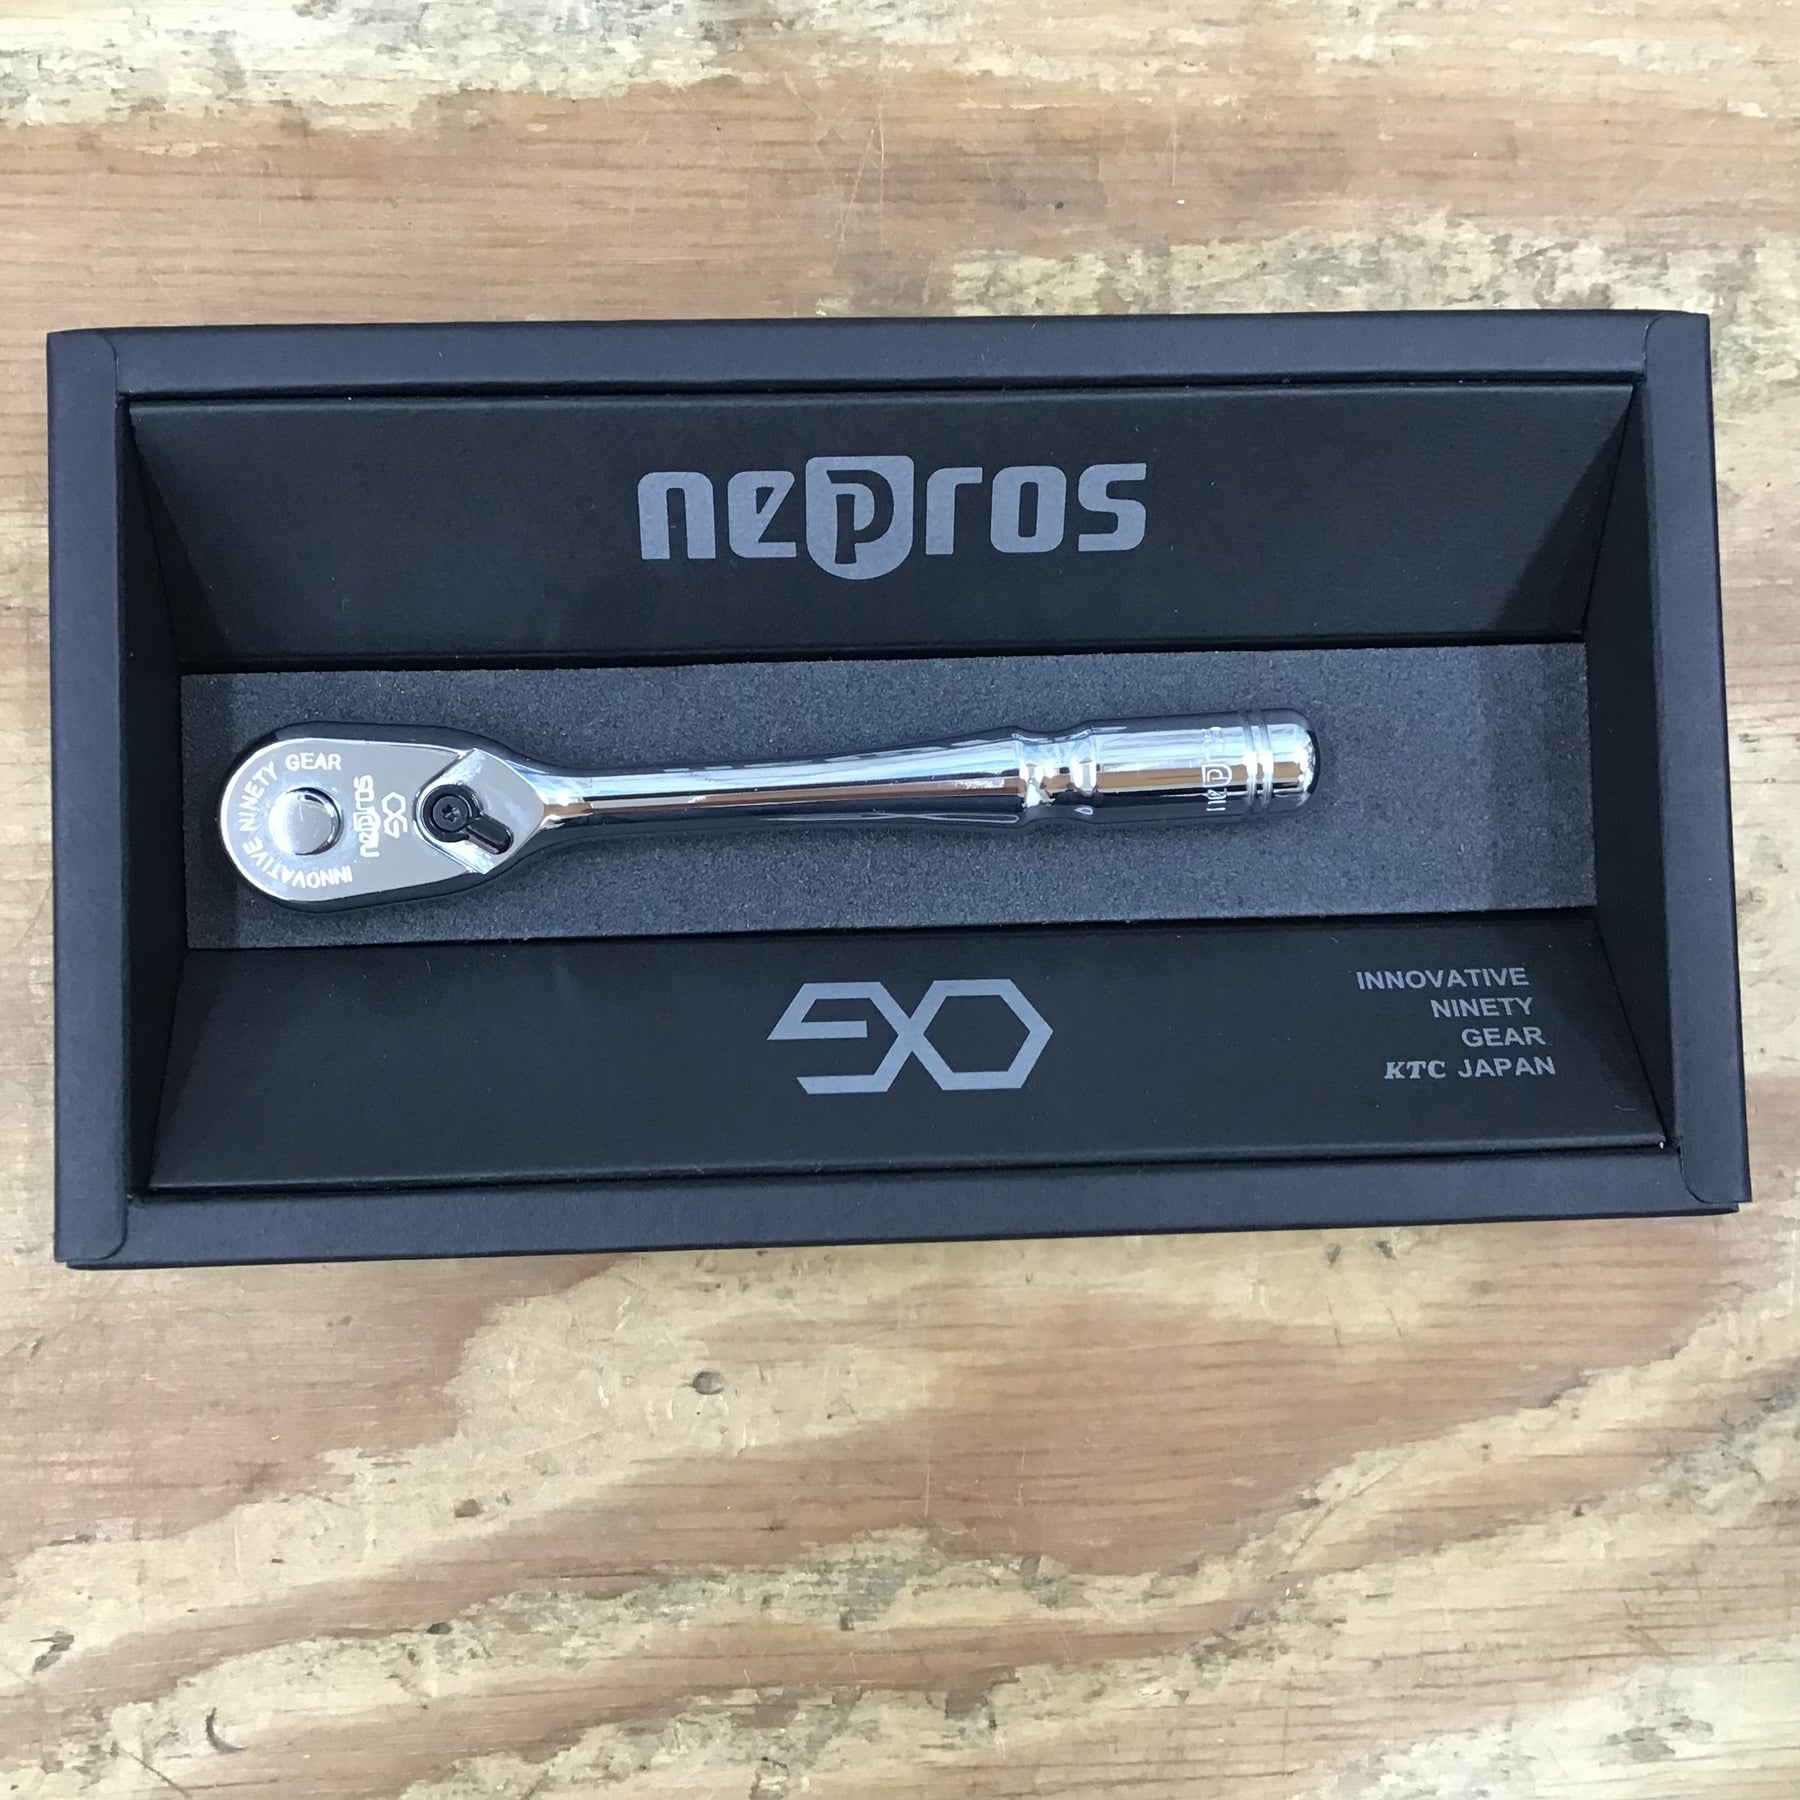 ネプロス/nepros NBRC390 9.5sq.コンパクトラチェットハンドル 